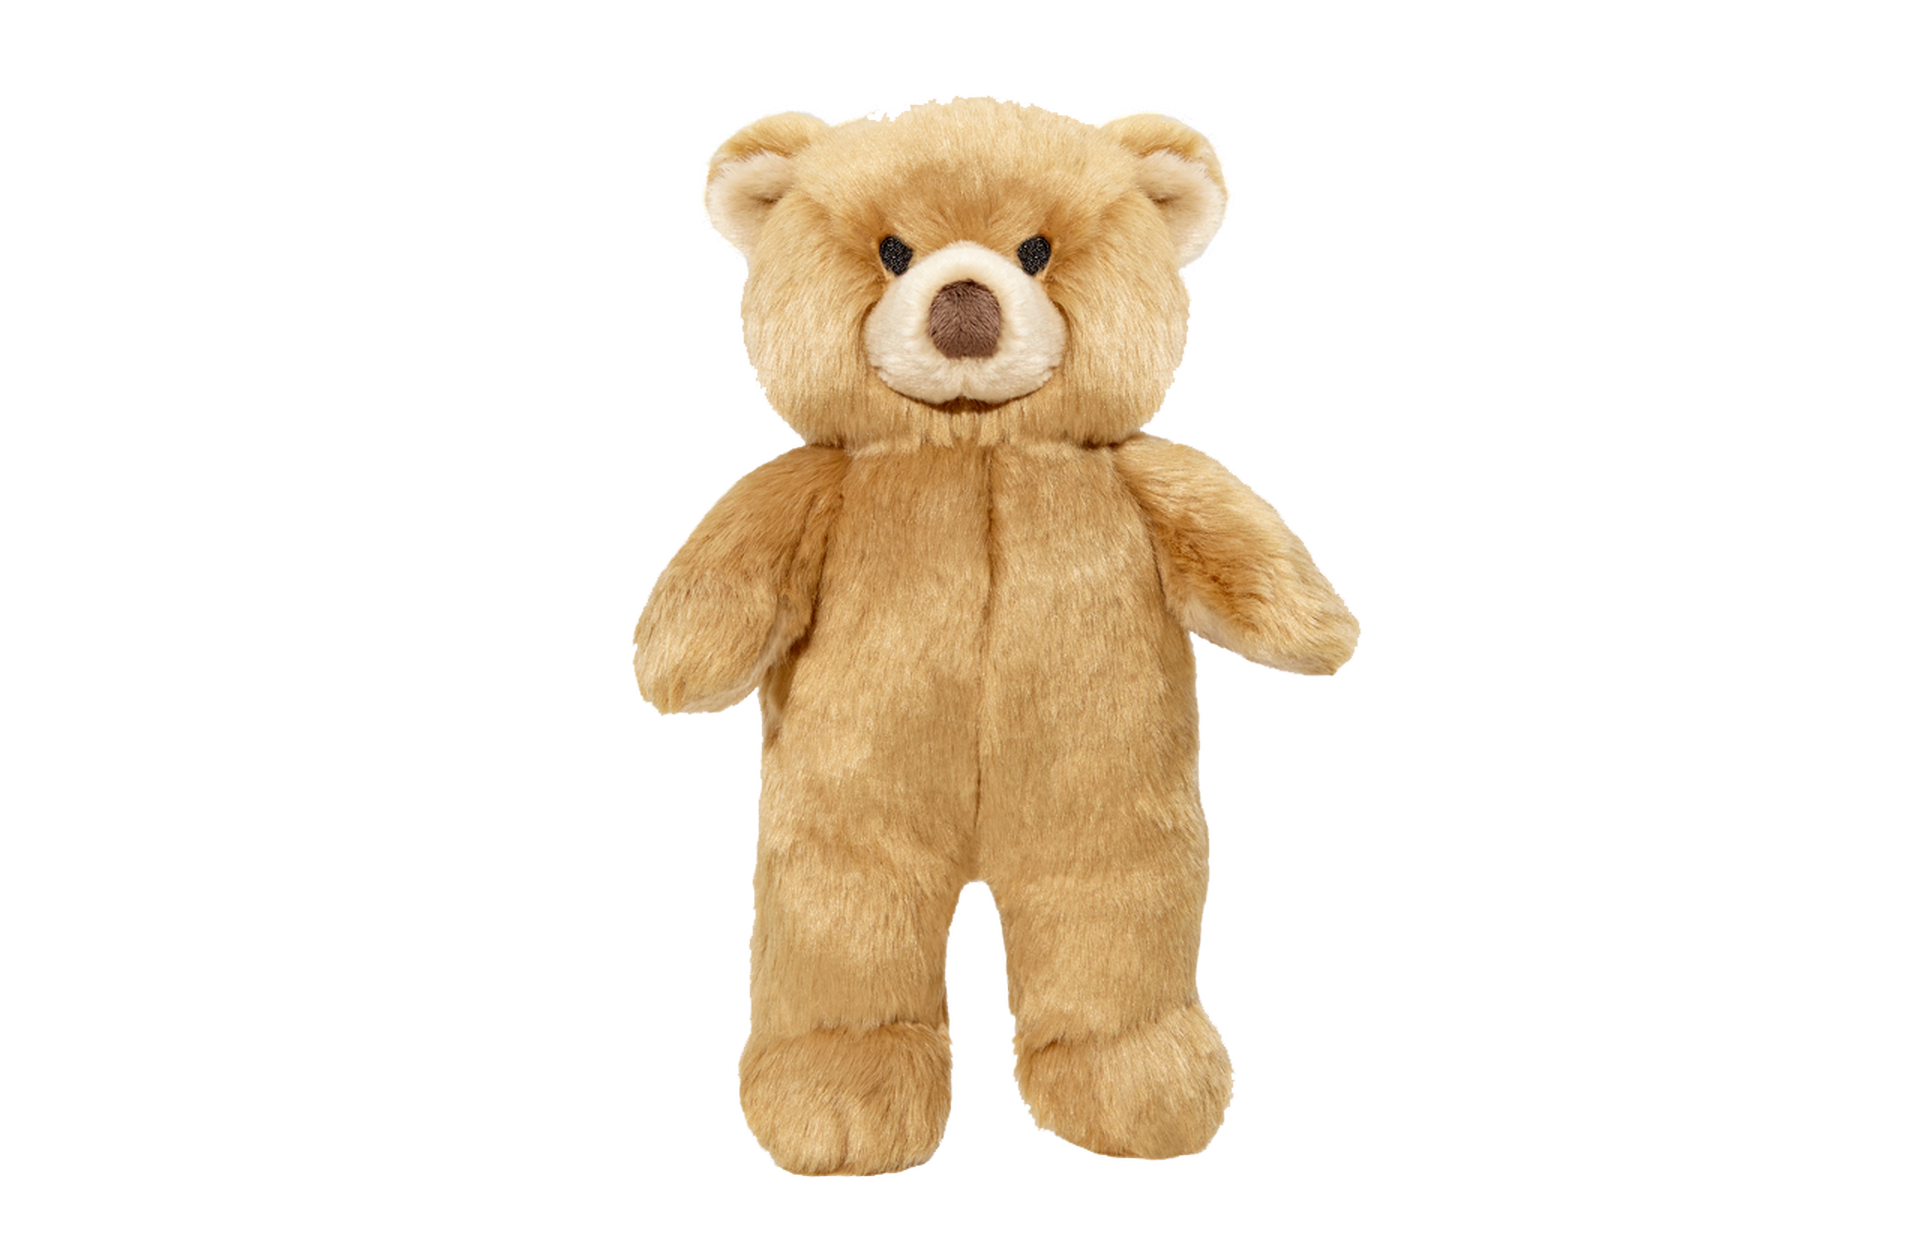 Mr. Honey Bear Plush Toy Delray